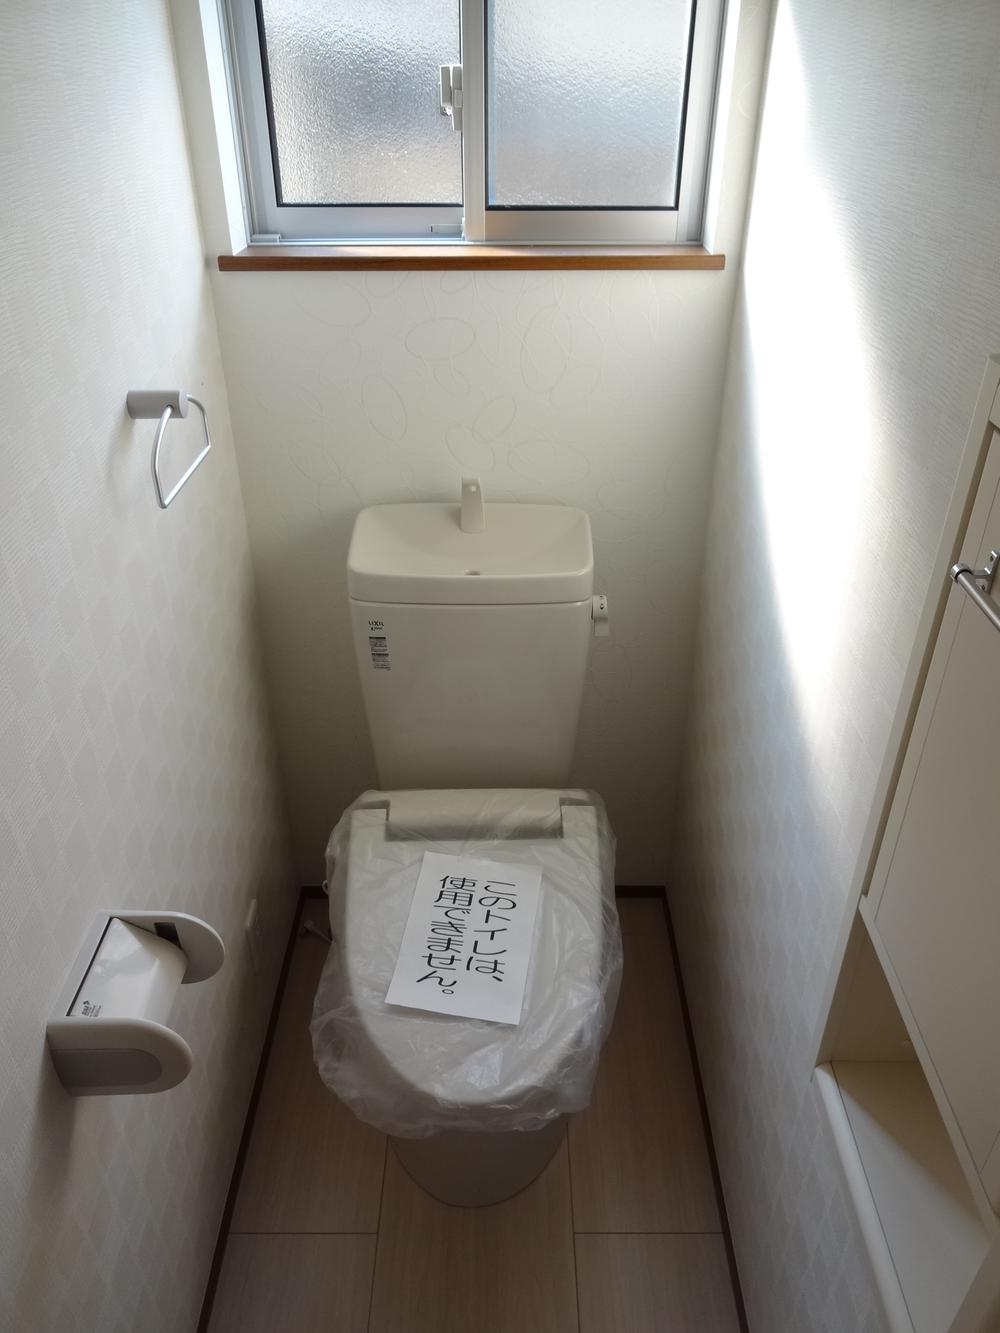 Toilet. Indoor (10 May 2013) Shooting